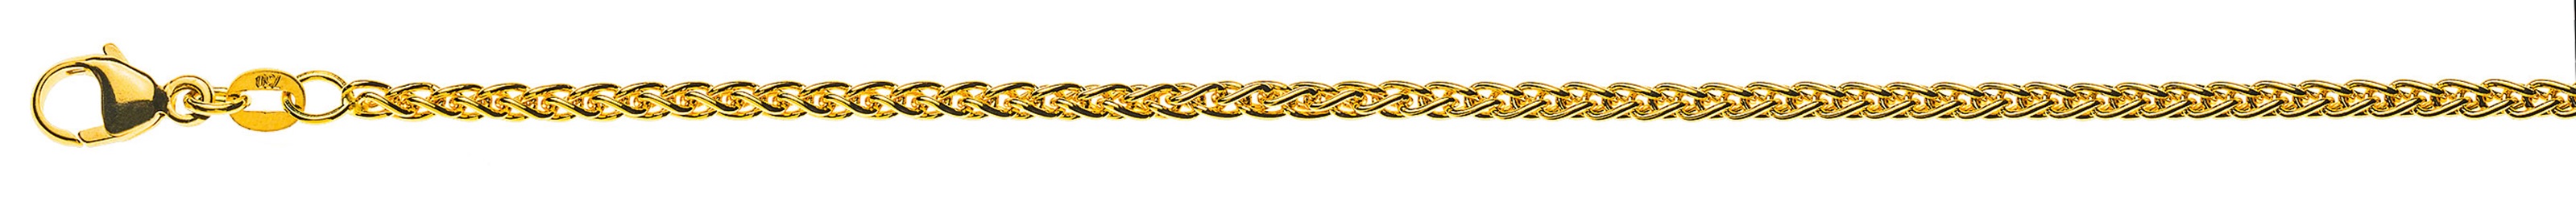 AURONOS Prestige Collier chaîne en or jaune 18K 55cm 2.5mm